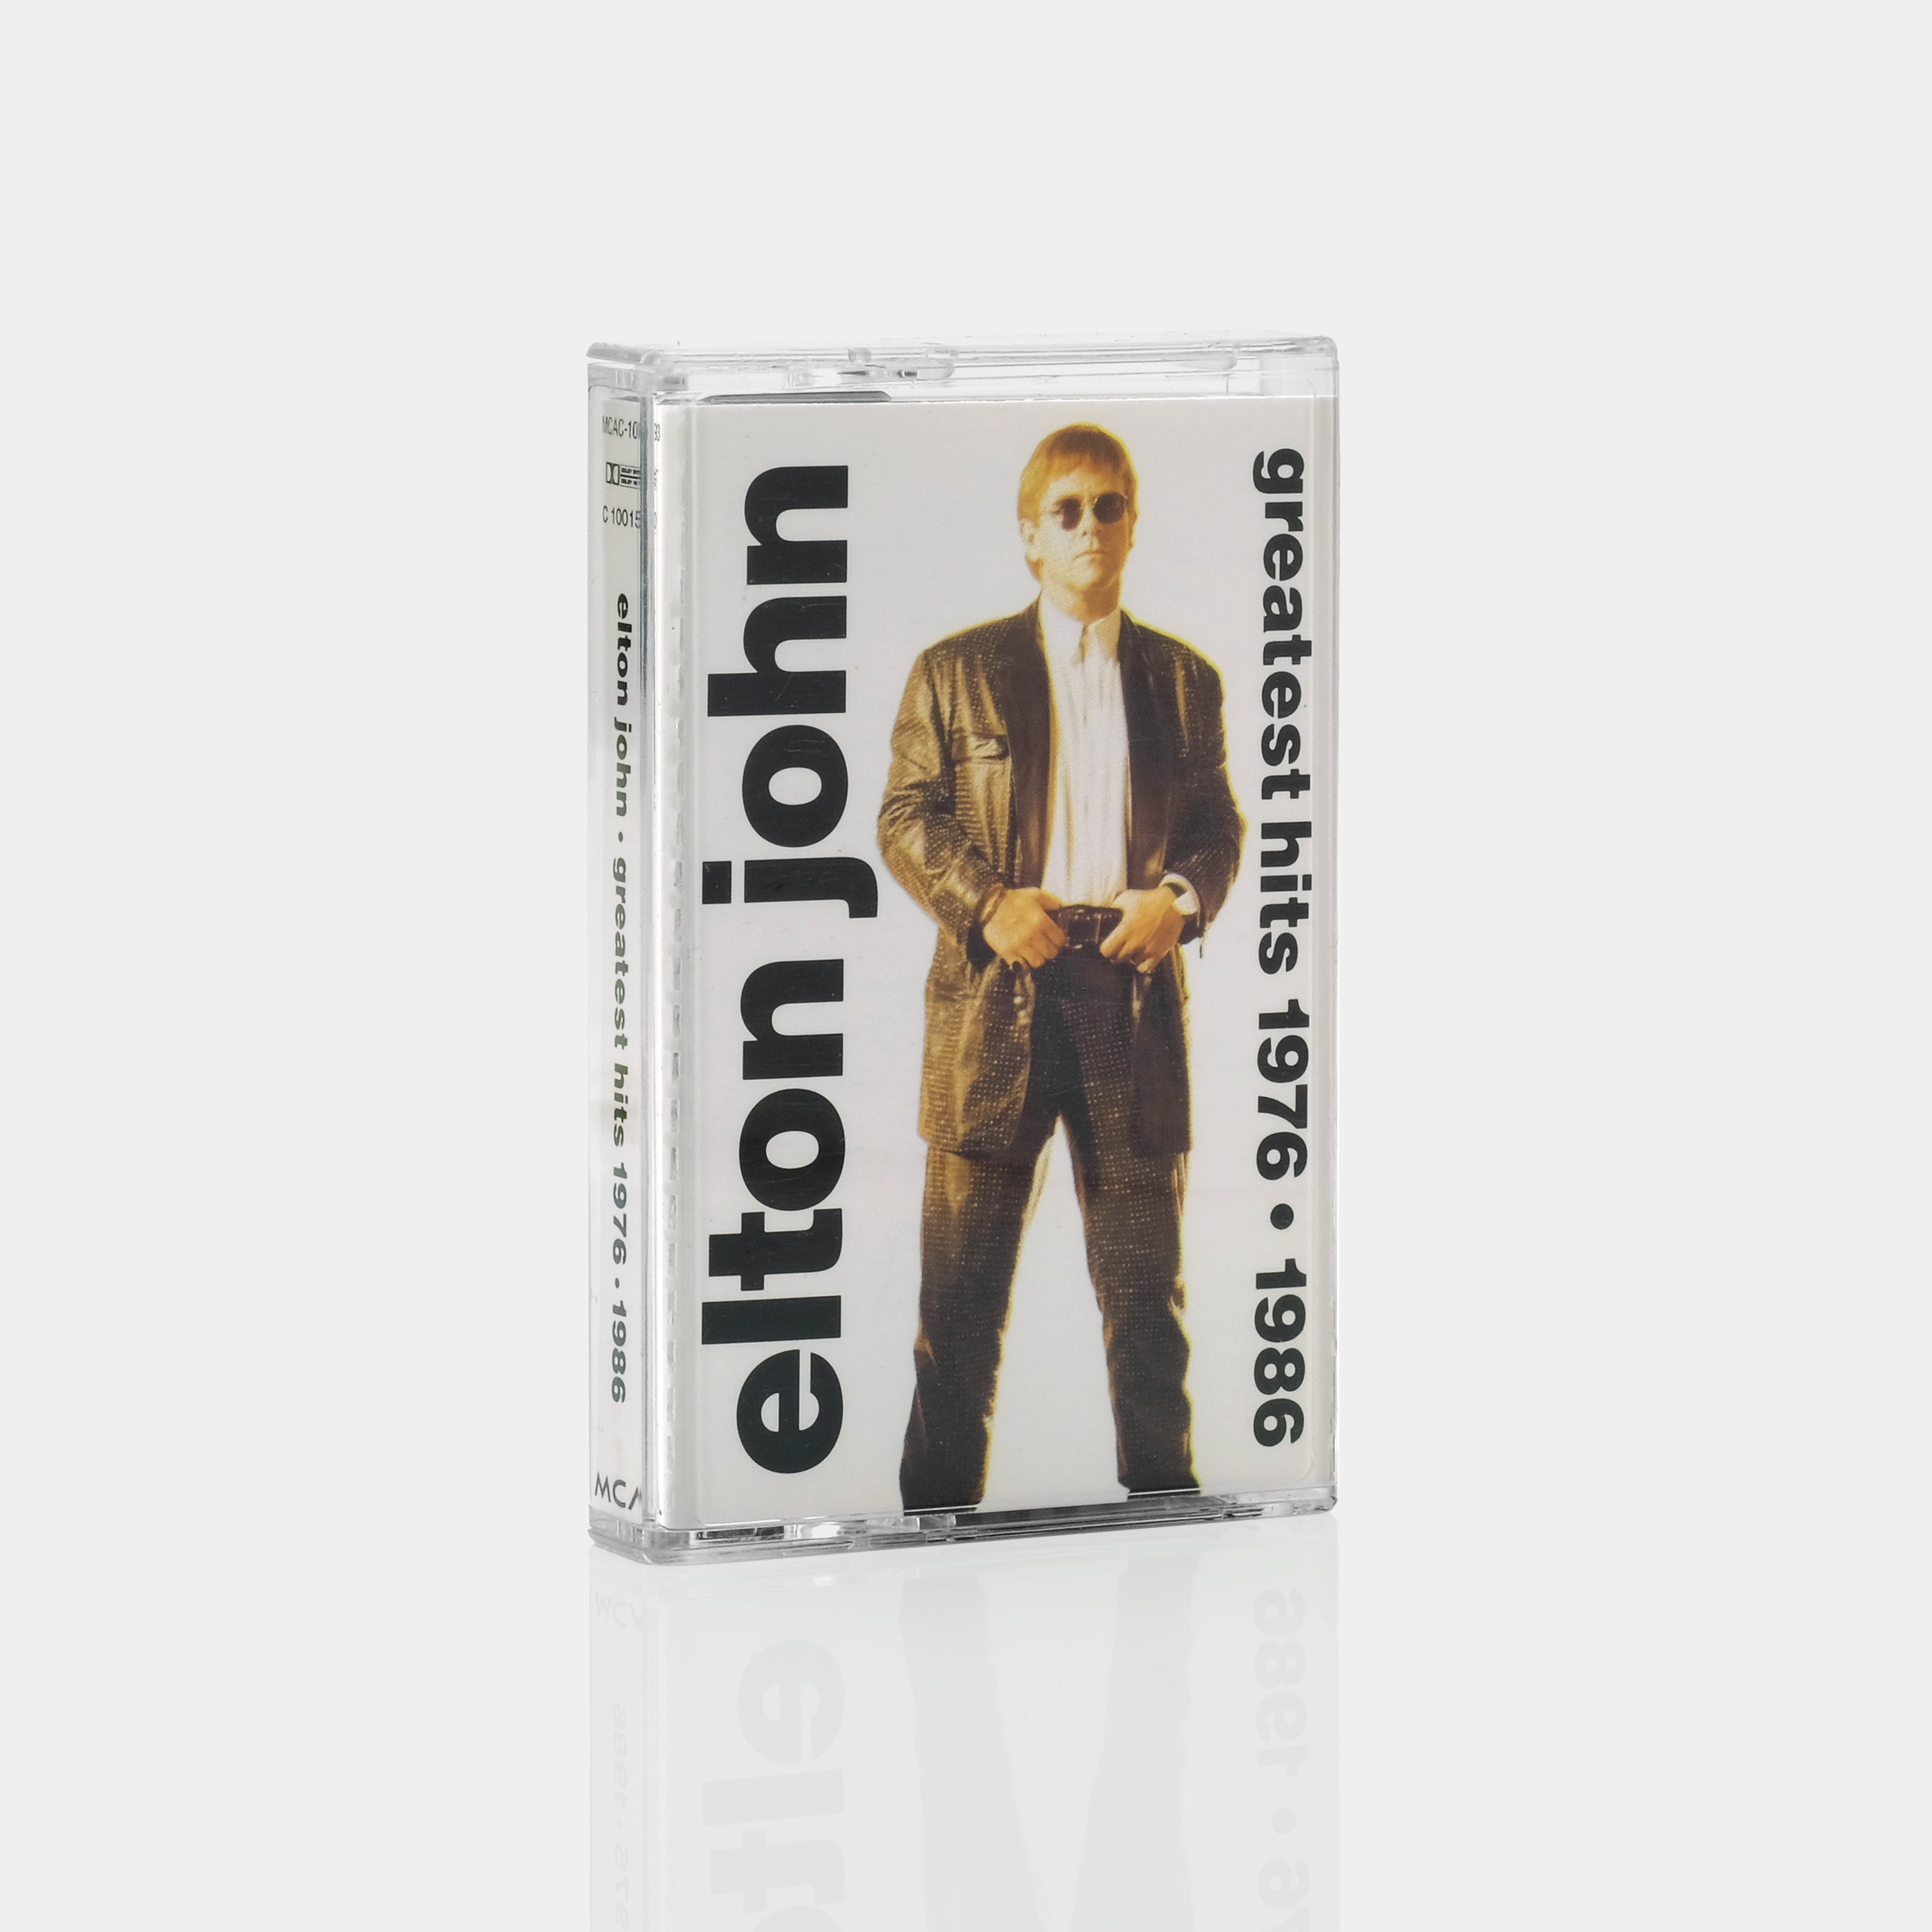 Elton John - Greatest Hits 1976-1986 Cassette Tape